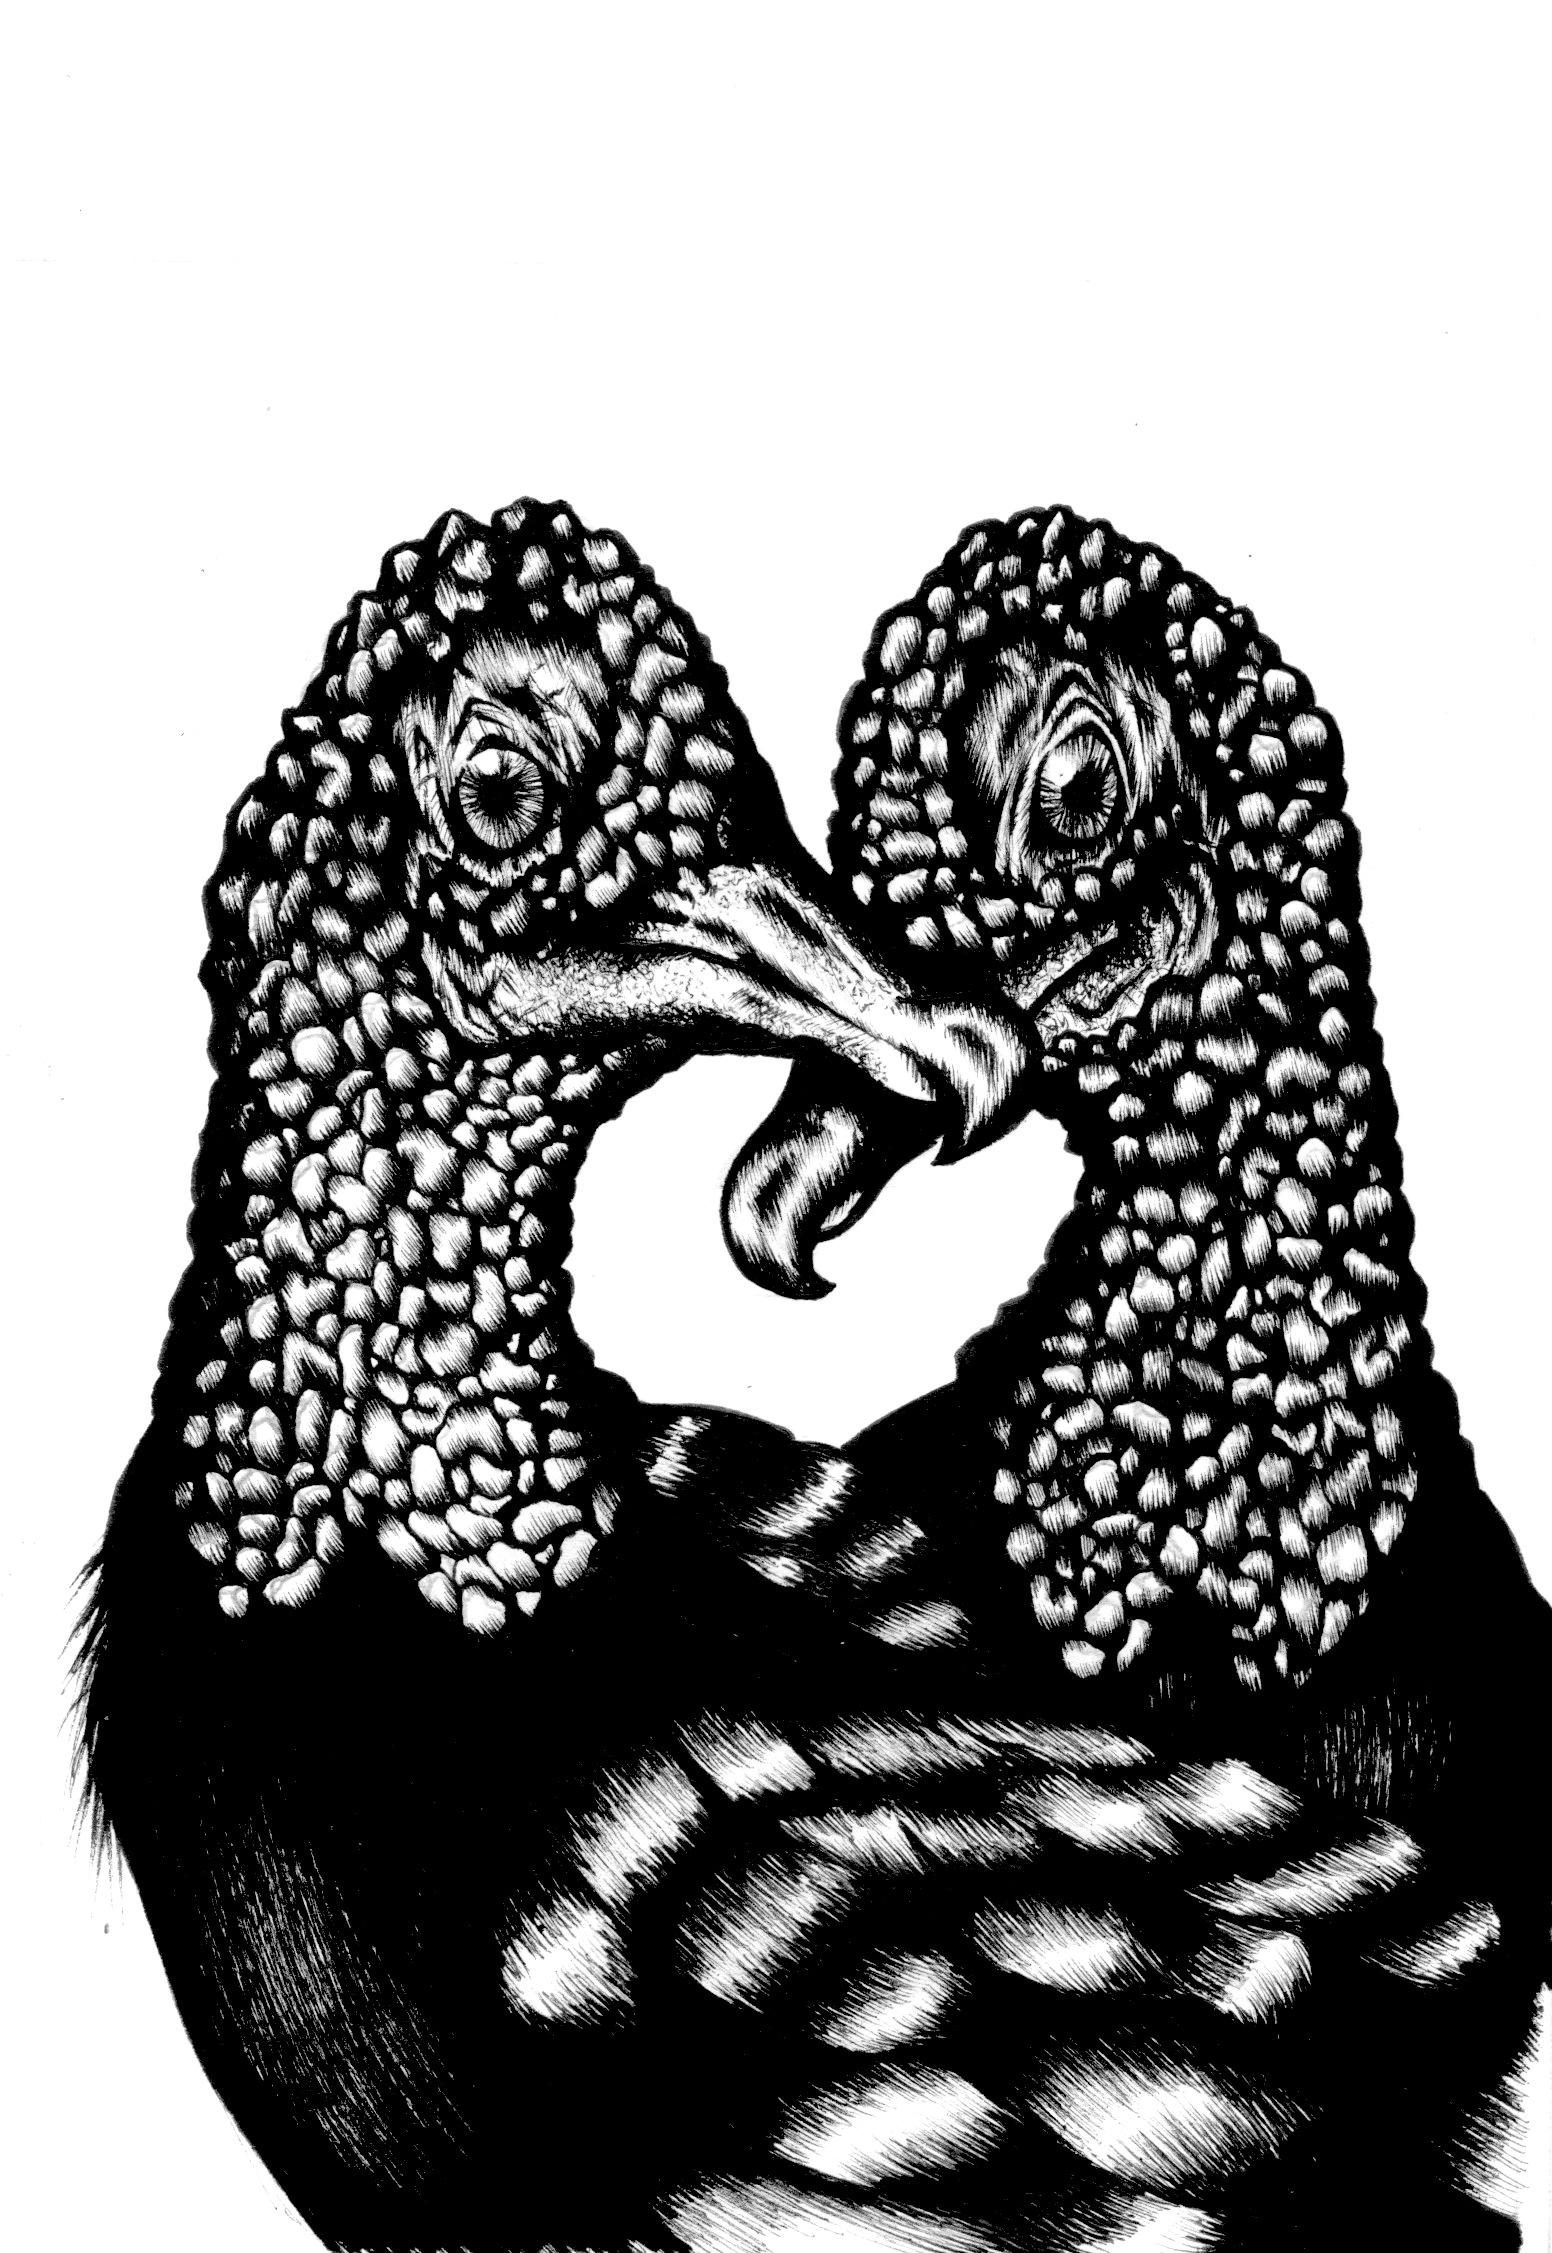   Black Vultures  (2016)  Birds that Stay Together, Forever   Ink &nbsp;  